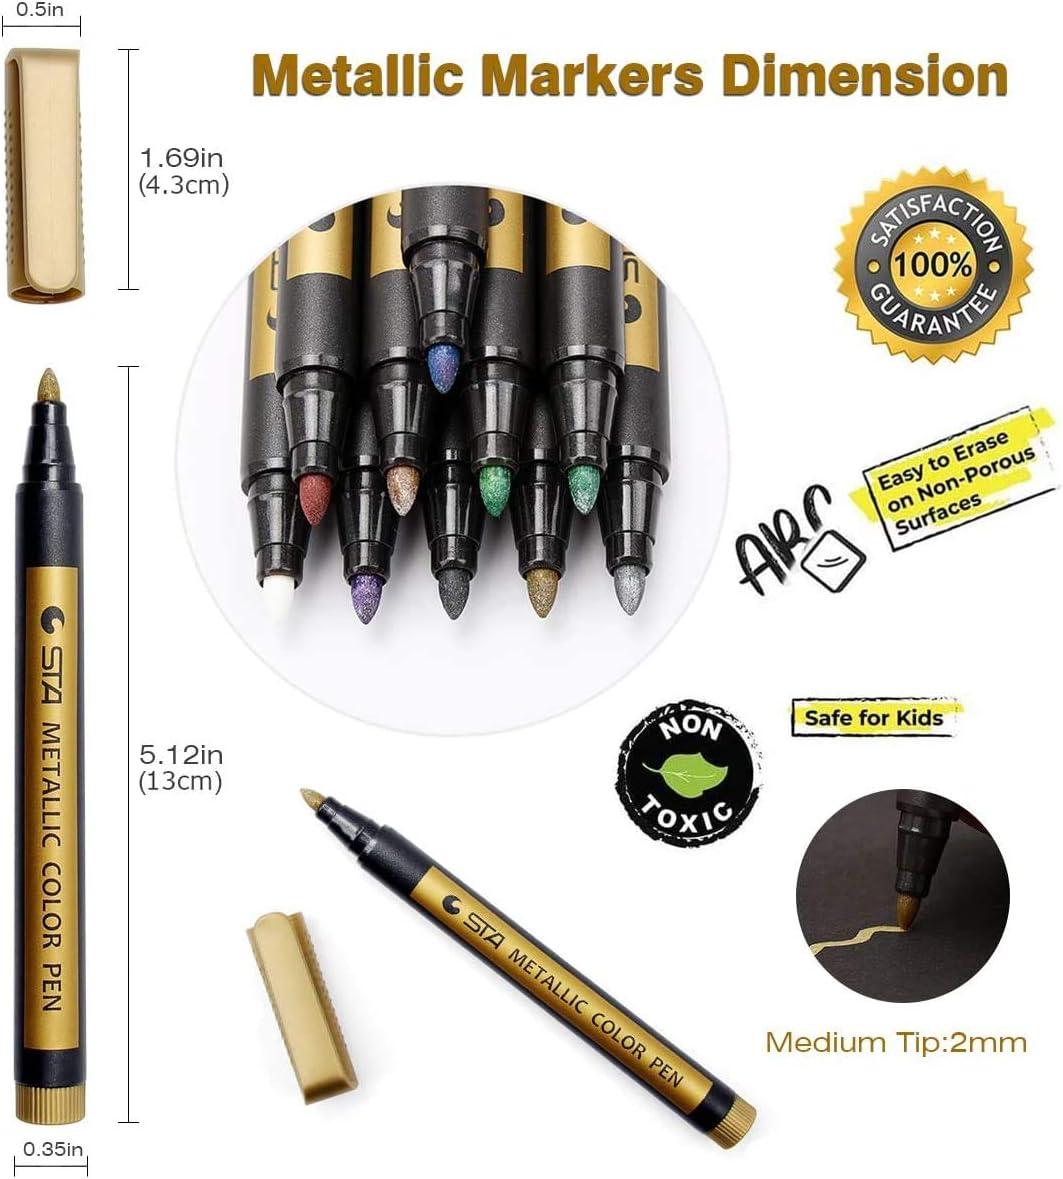 PANDAFLY Metallic Marker Pens Set of 10 Medium Point Metallic